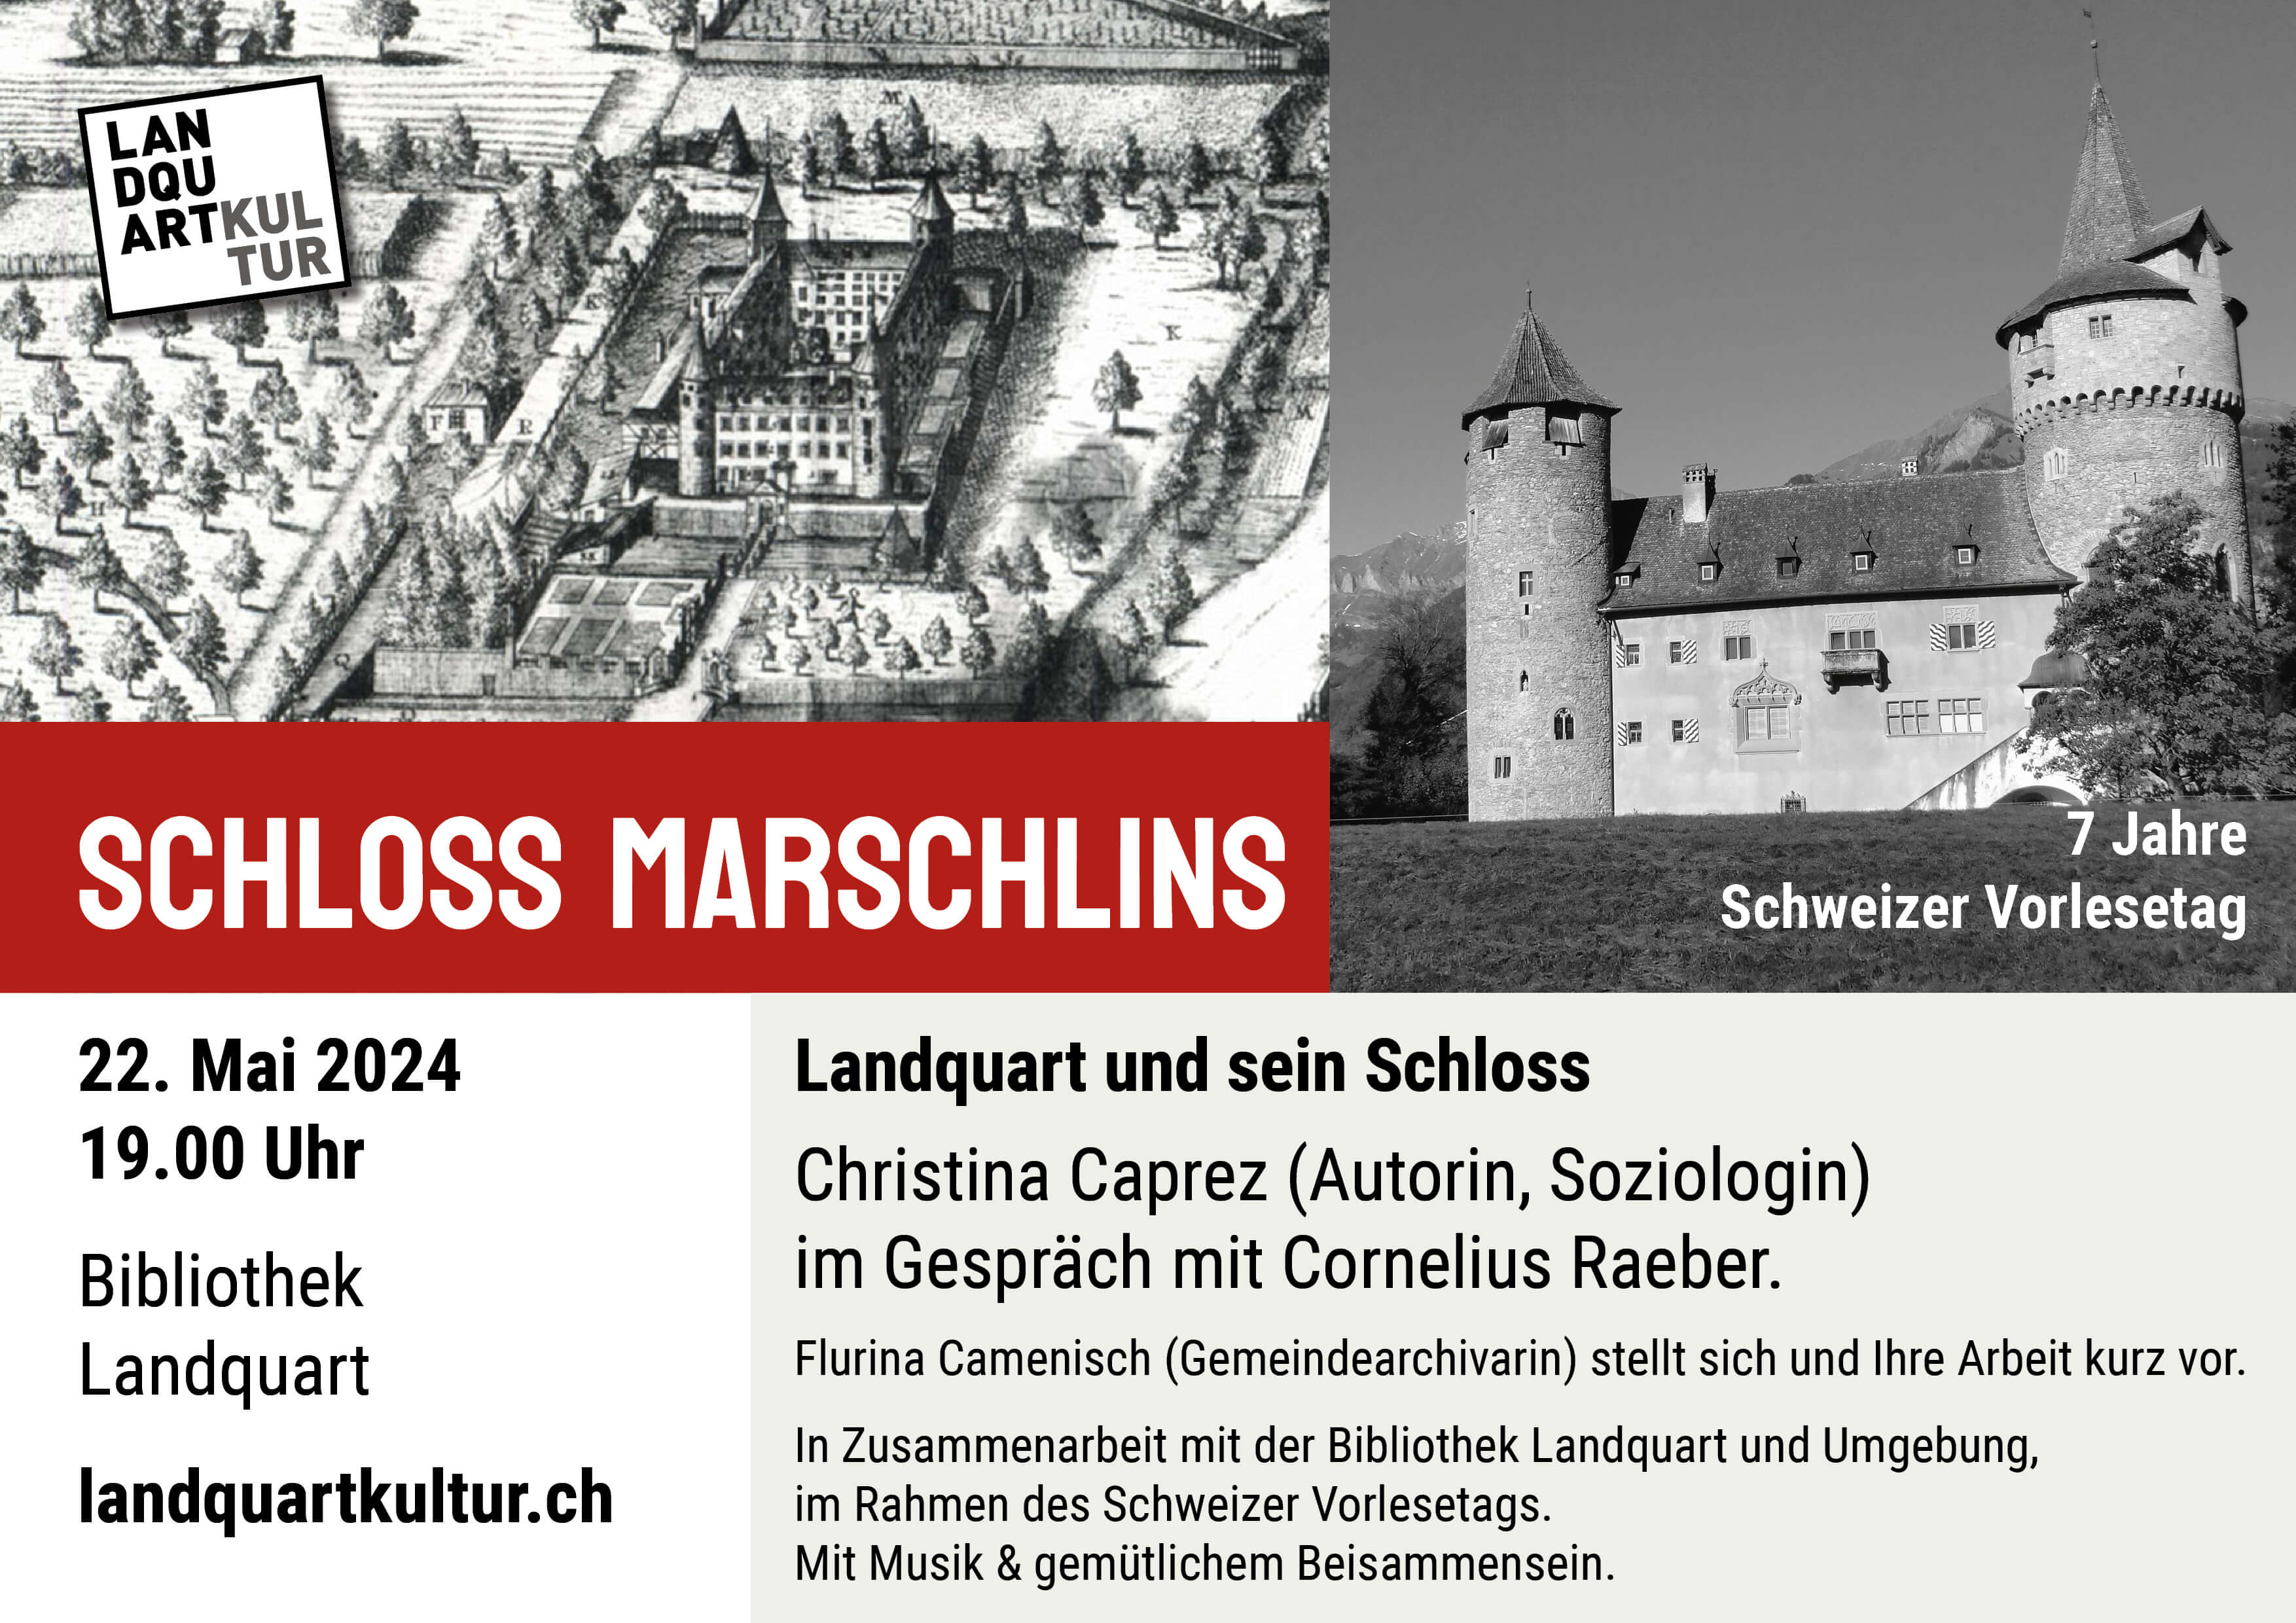 Alter Stich und schwarz-weiss Foto vom Schloss Marschlins, Landquart. Dazu Details zum Event analog Text auf der Website.